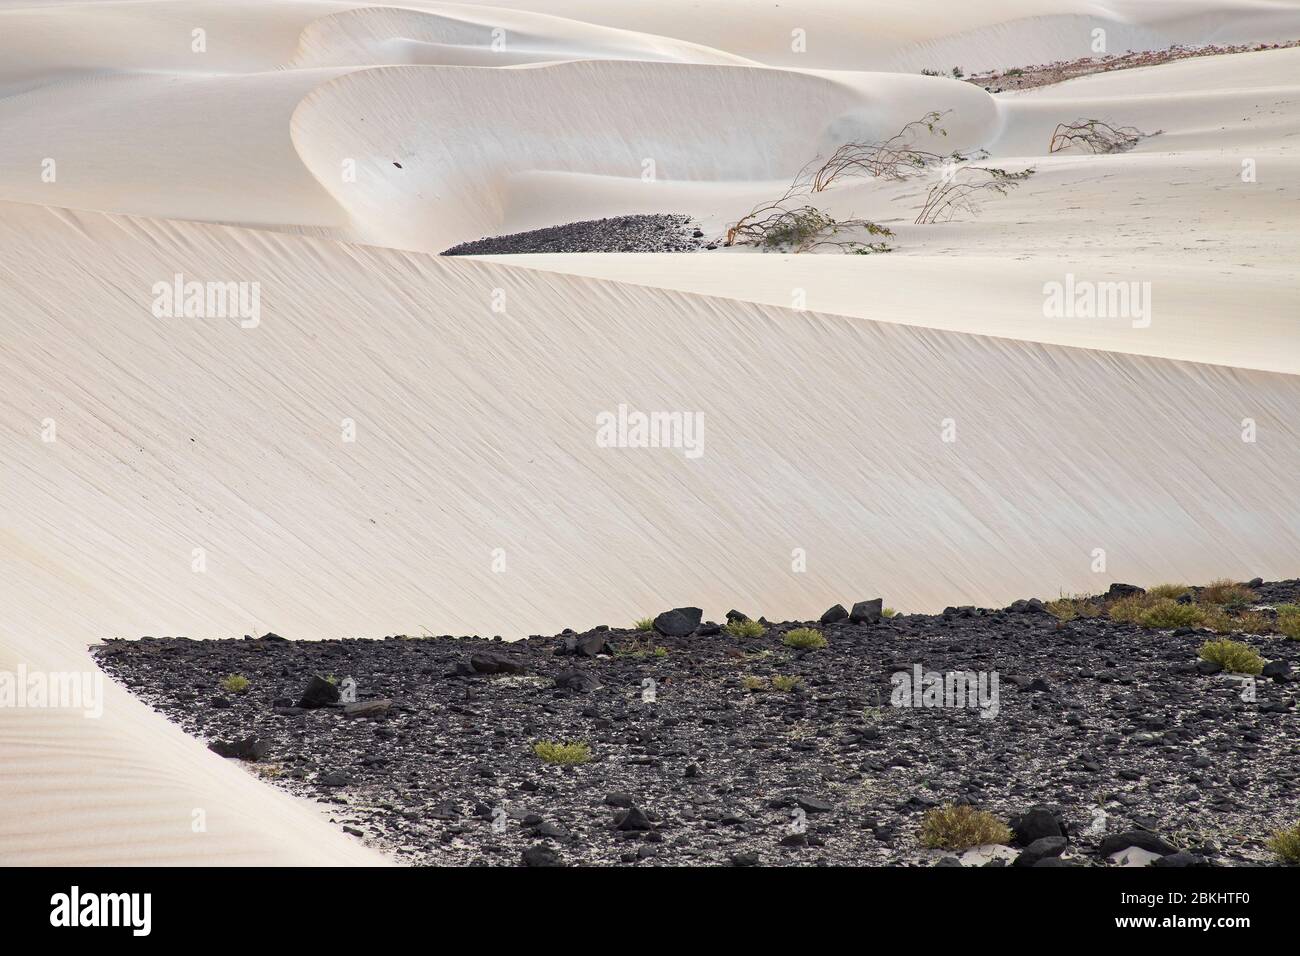 Dunes formed by blown in Sahara desert sand and volcanic rocks in the Deserto de Viana desert on the island of Boa Vista, Cape Verde / Cabo Verde Stock Photo